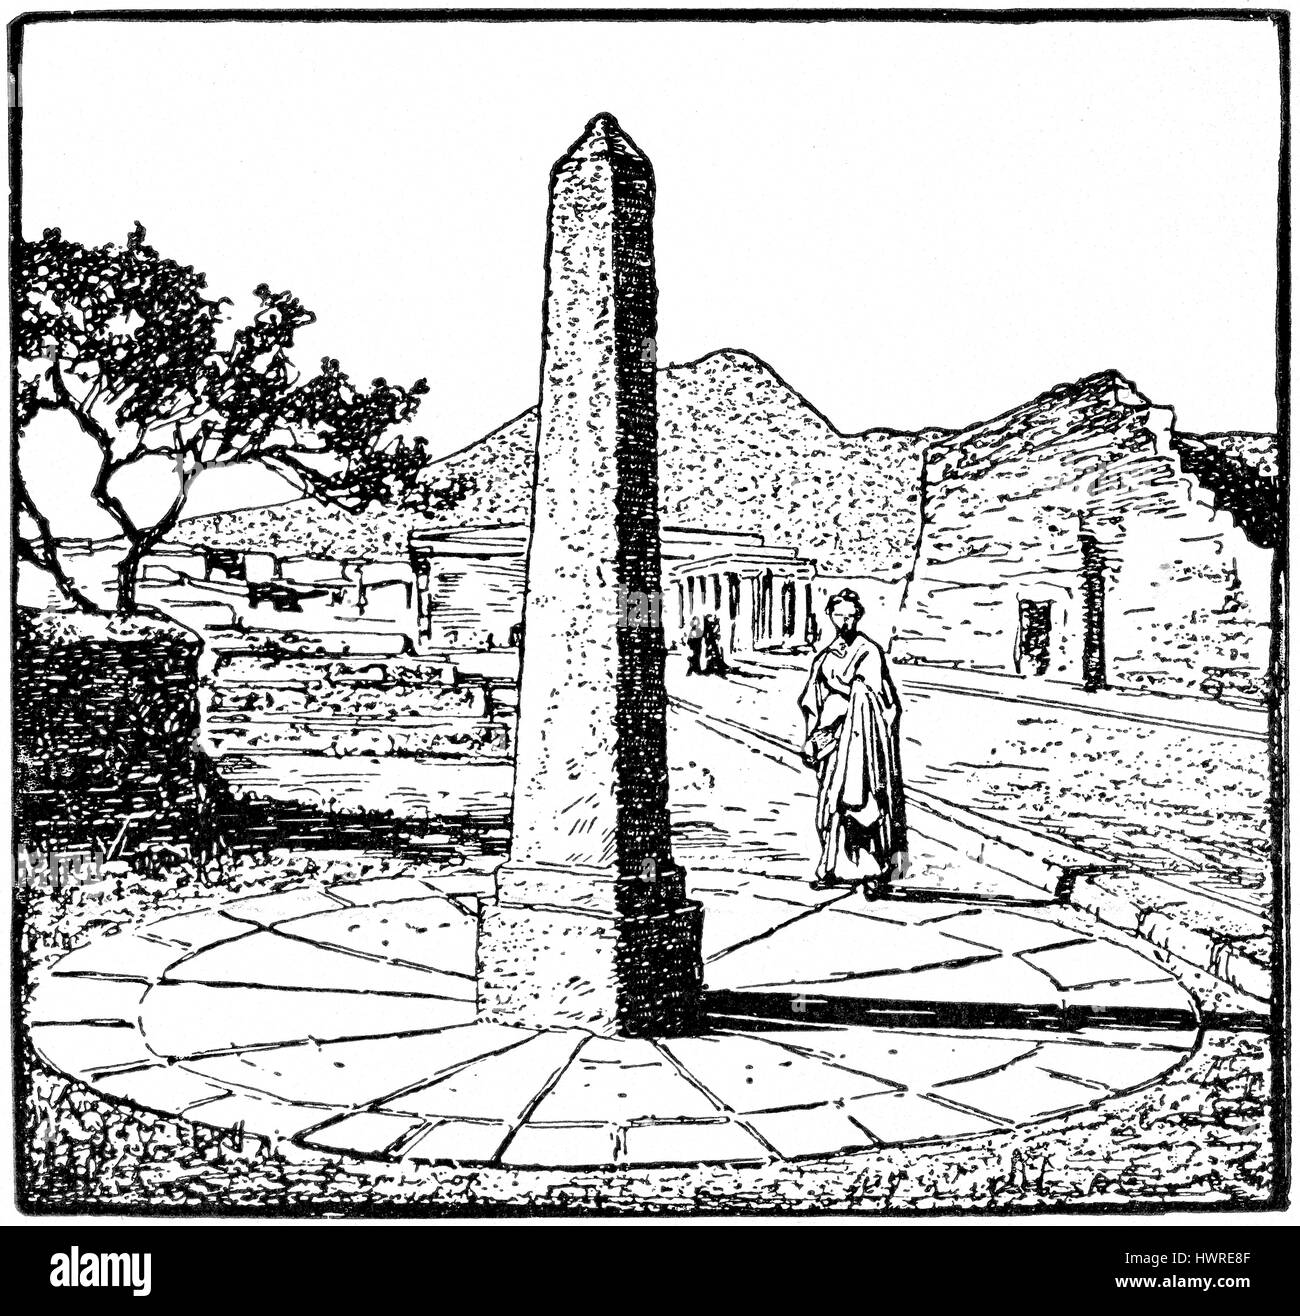 Une stèle antique utilisé ( gnomon gnomon est la partie d'un cadran solaire qui jette une ombre). Lorsque l'ombre du gnomon réduit à sa longueur la plus courte il indiquait 12h00. Banque D'Images